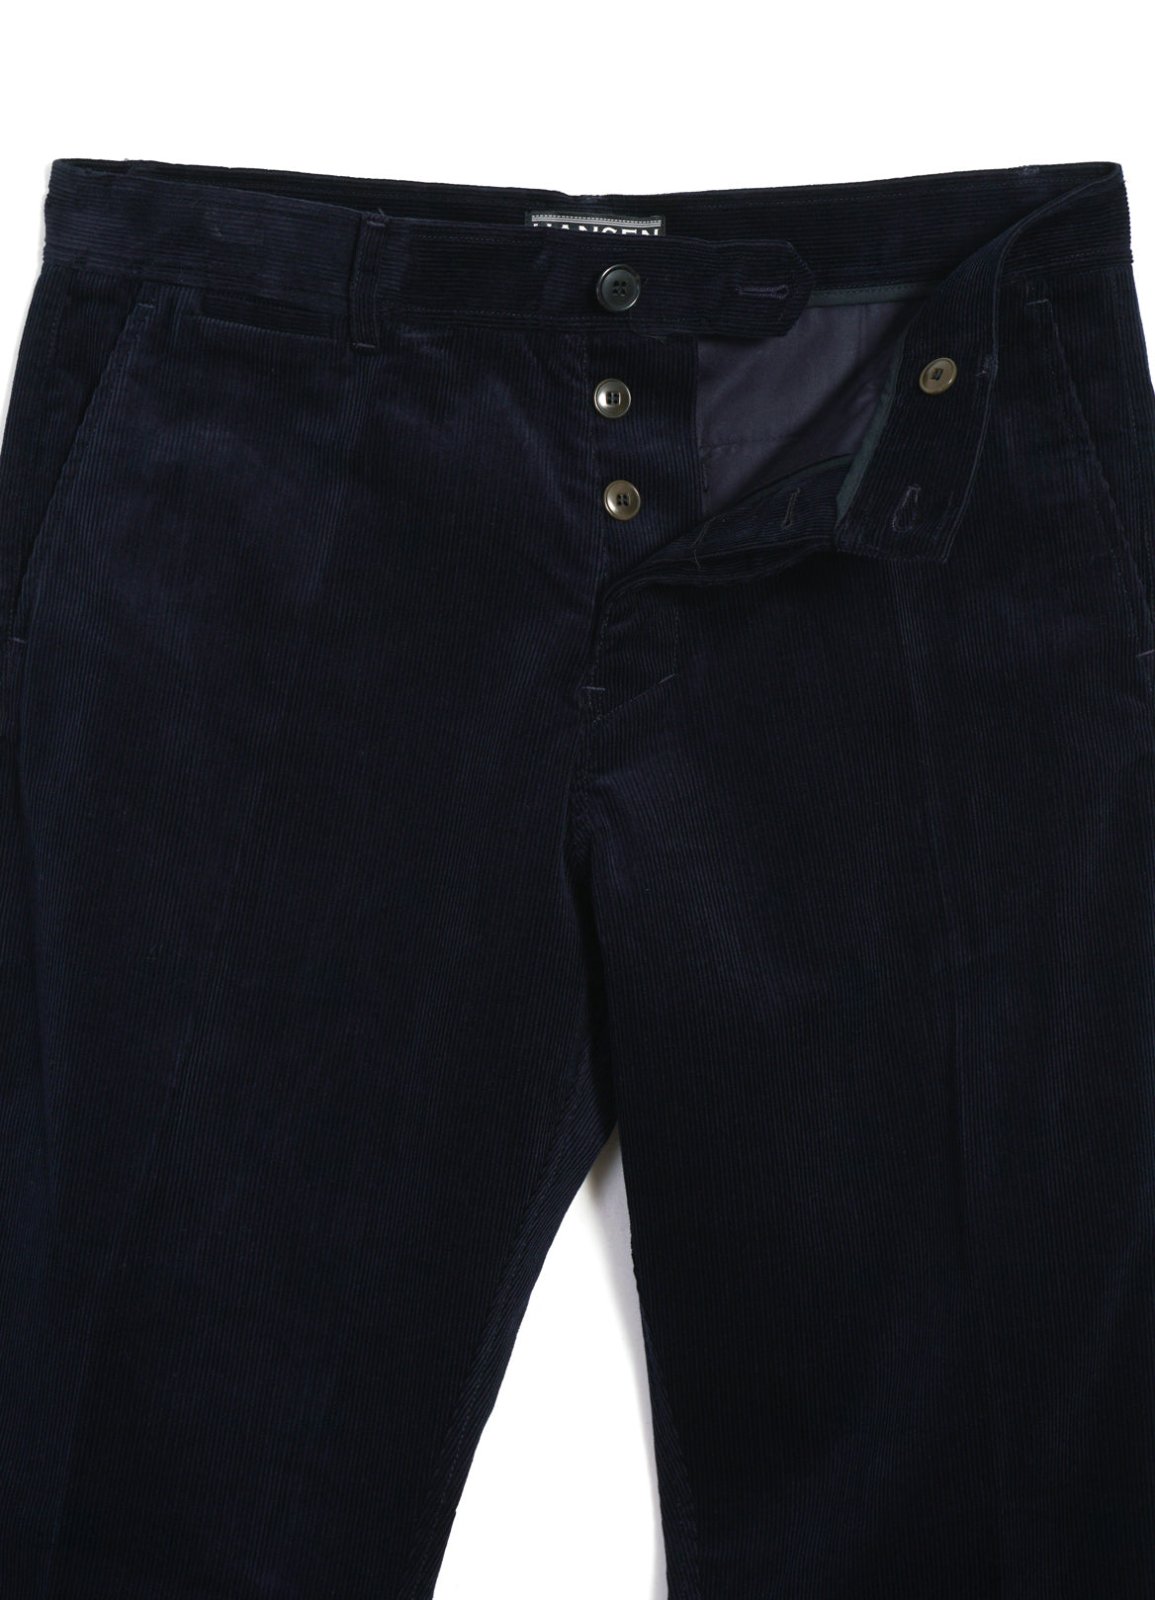 HANSEN GARMENTS - FRED | Regular Fit Trousers | Fluid Navy - HANSEN Garments